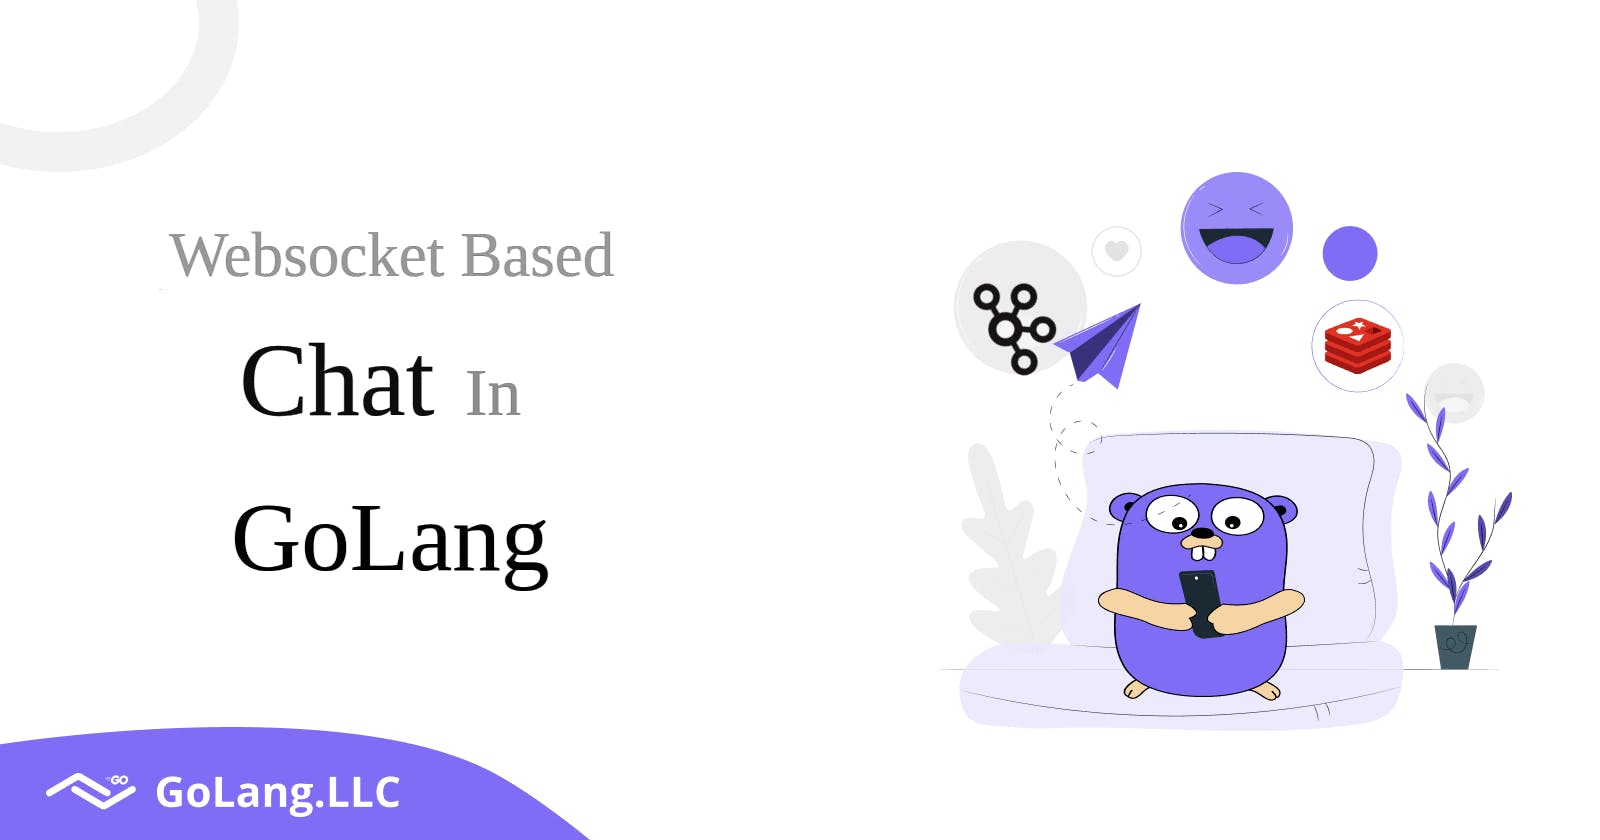 Websocket based Chat in GoLang